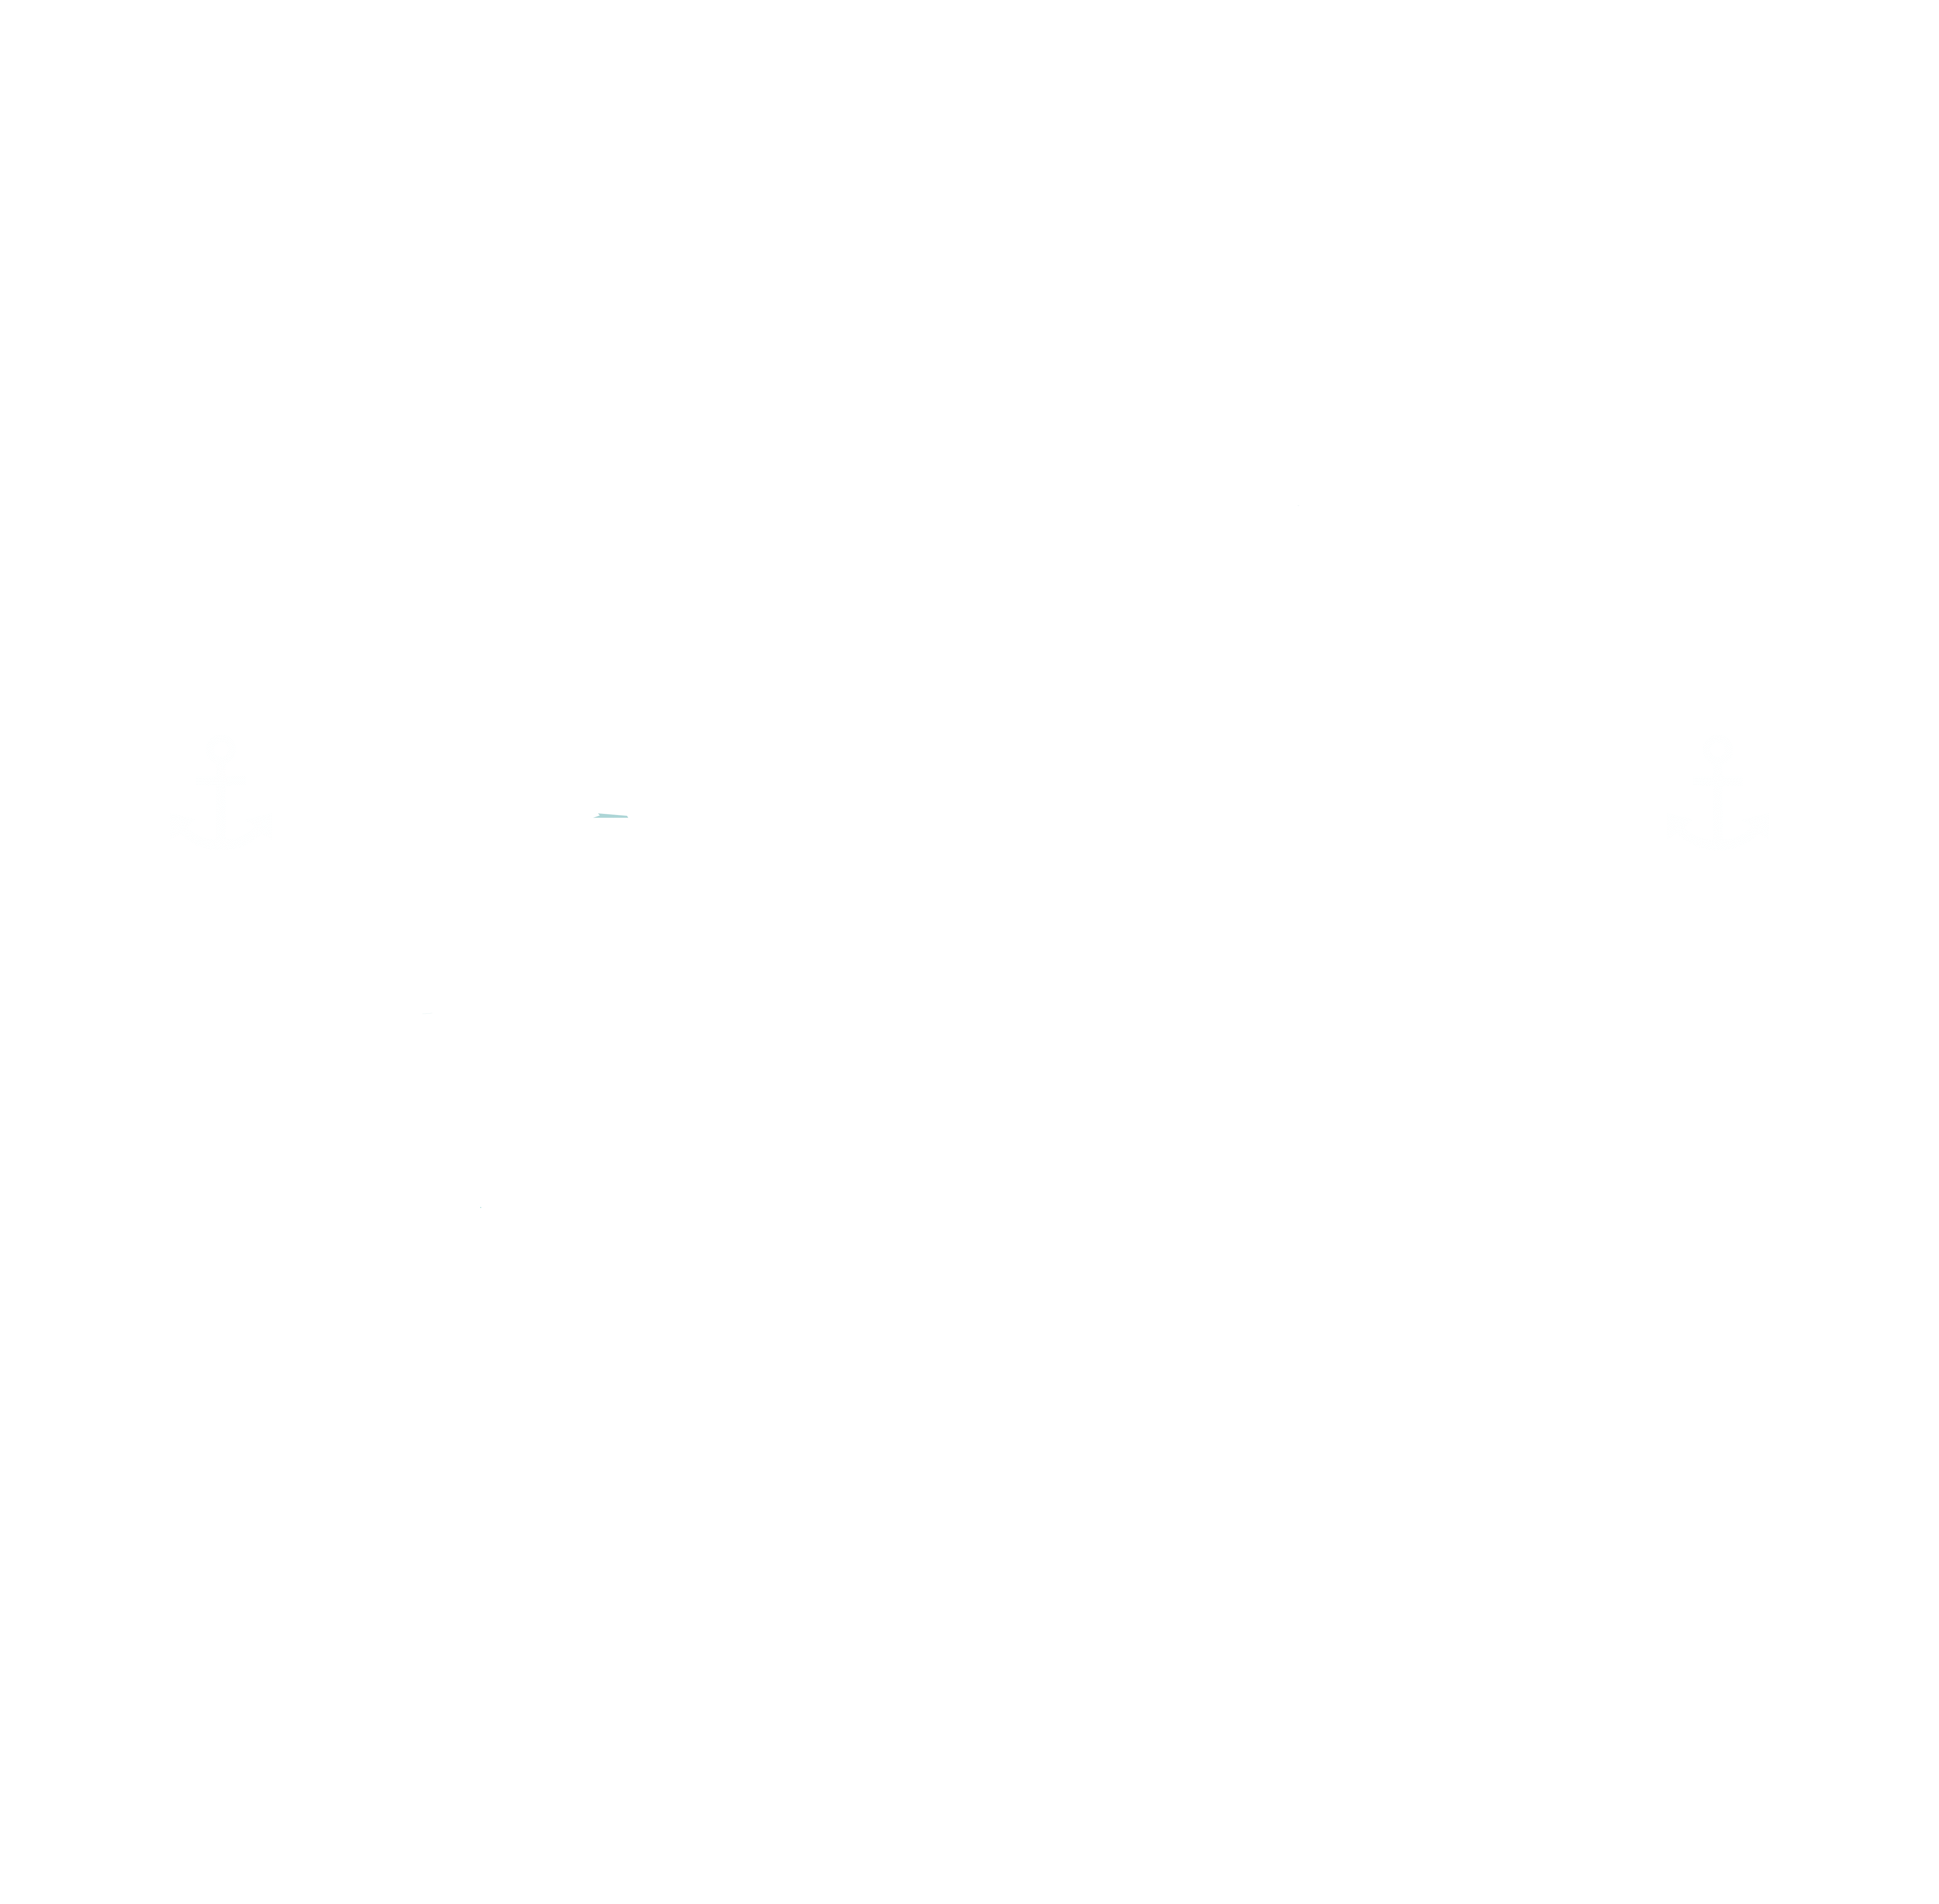 Excelsior Animal Hospital